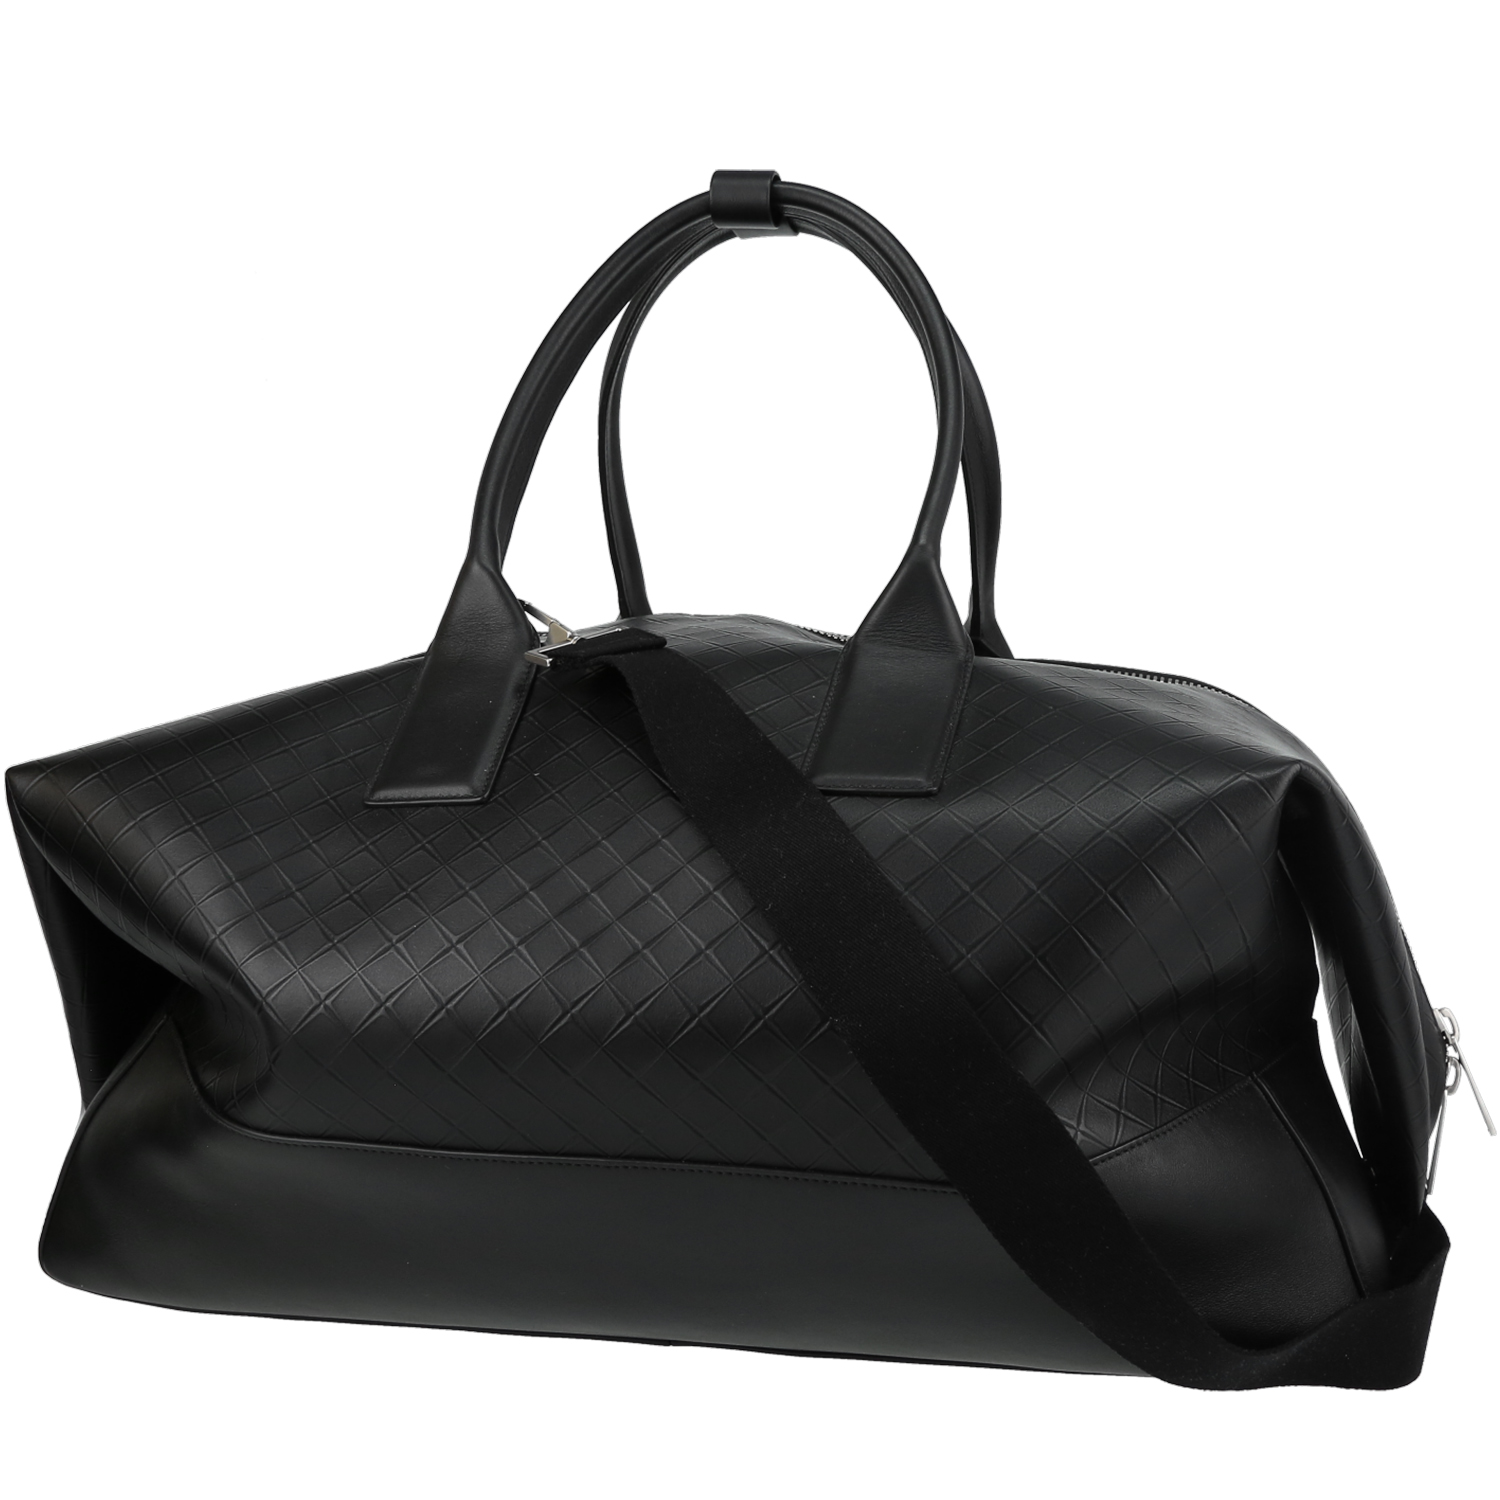 HealthdesignShops  The Attico Monday triangle leather tote bag